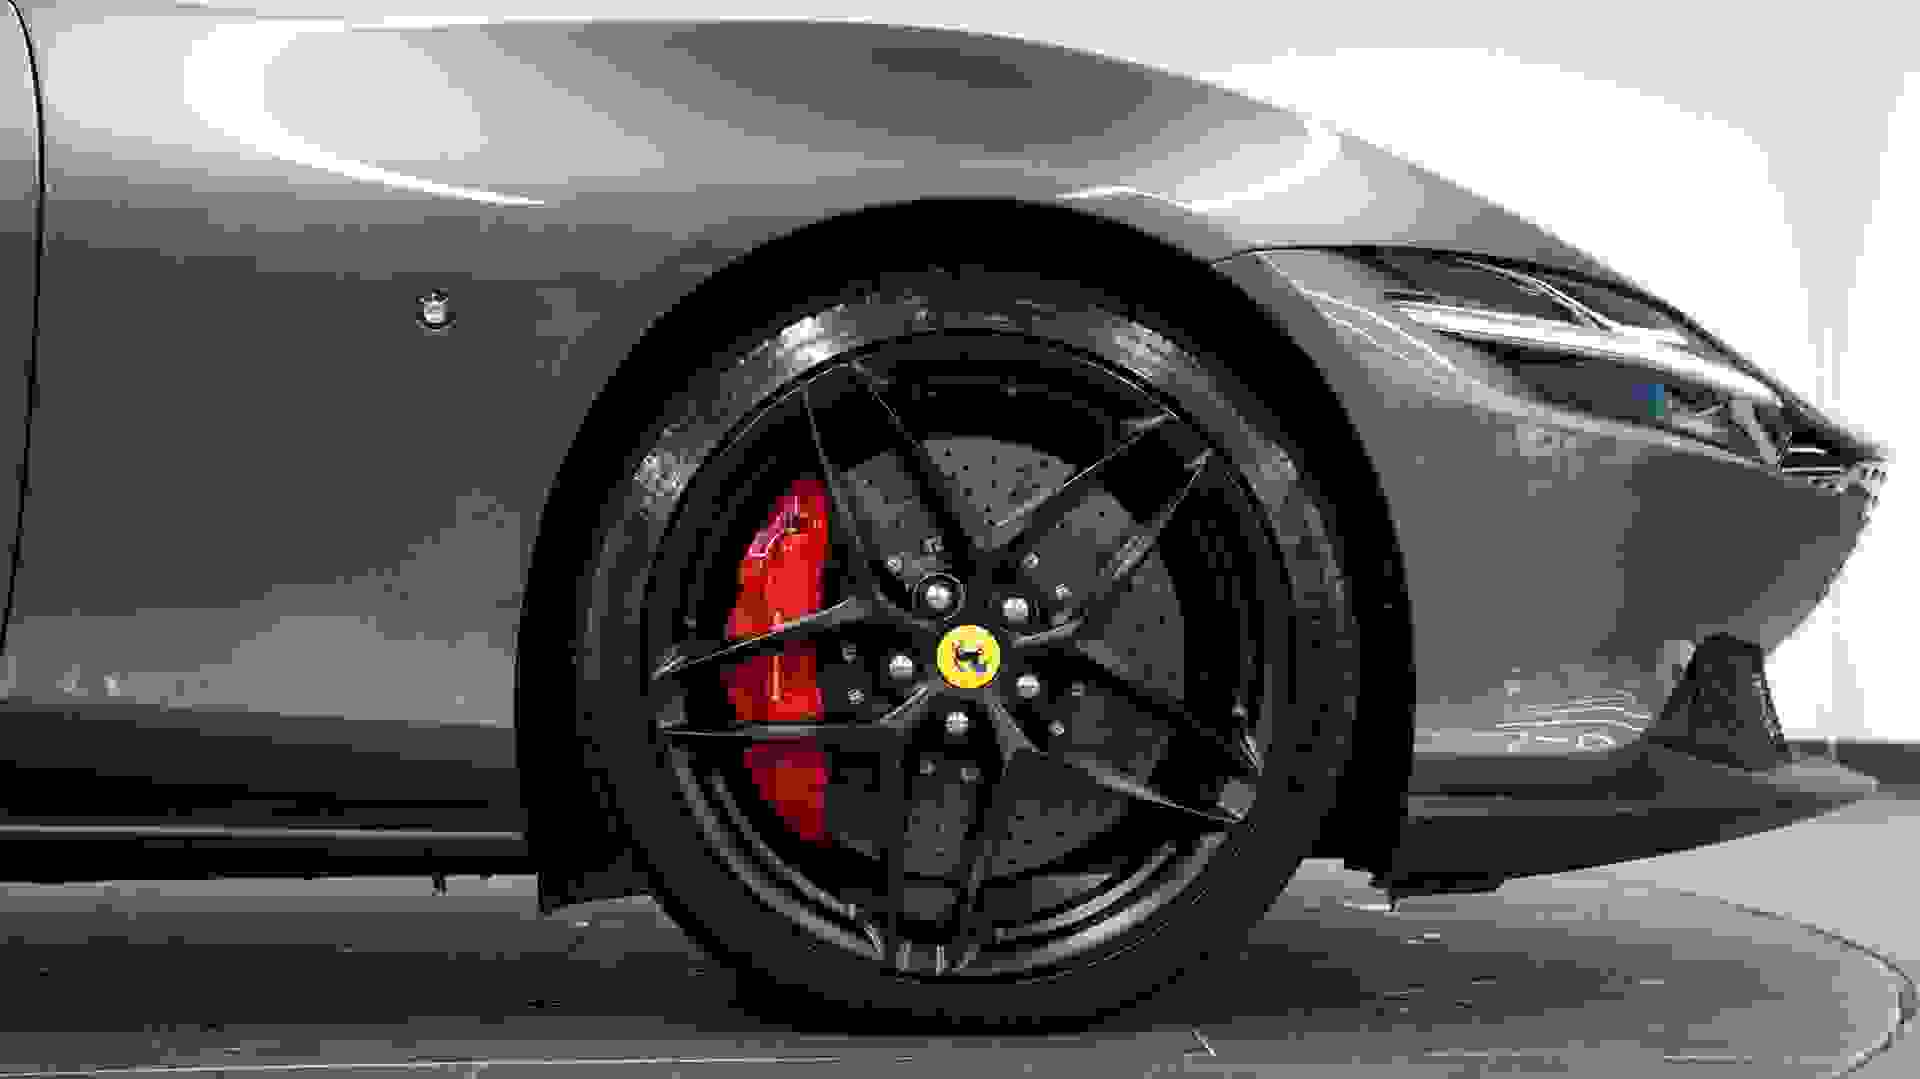 Ferrari ROMA Photo 8483c5e0-71c2-44d6-8030-5bd954463385.jpg